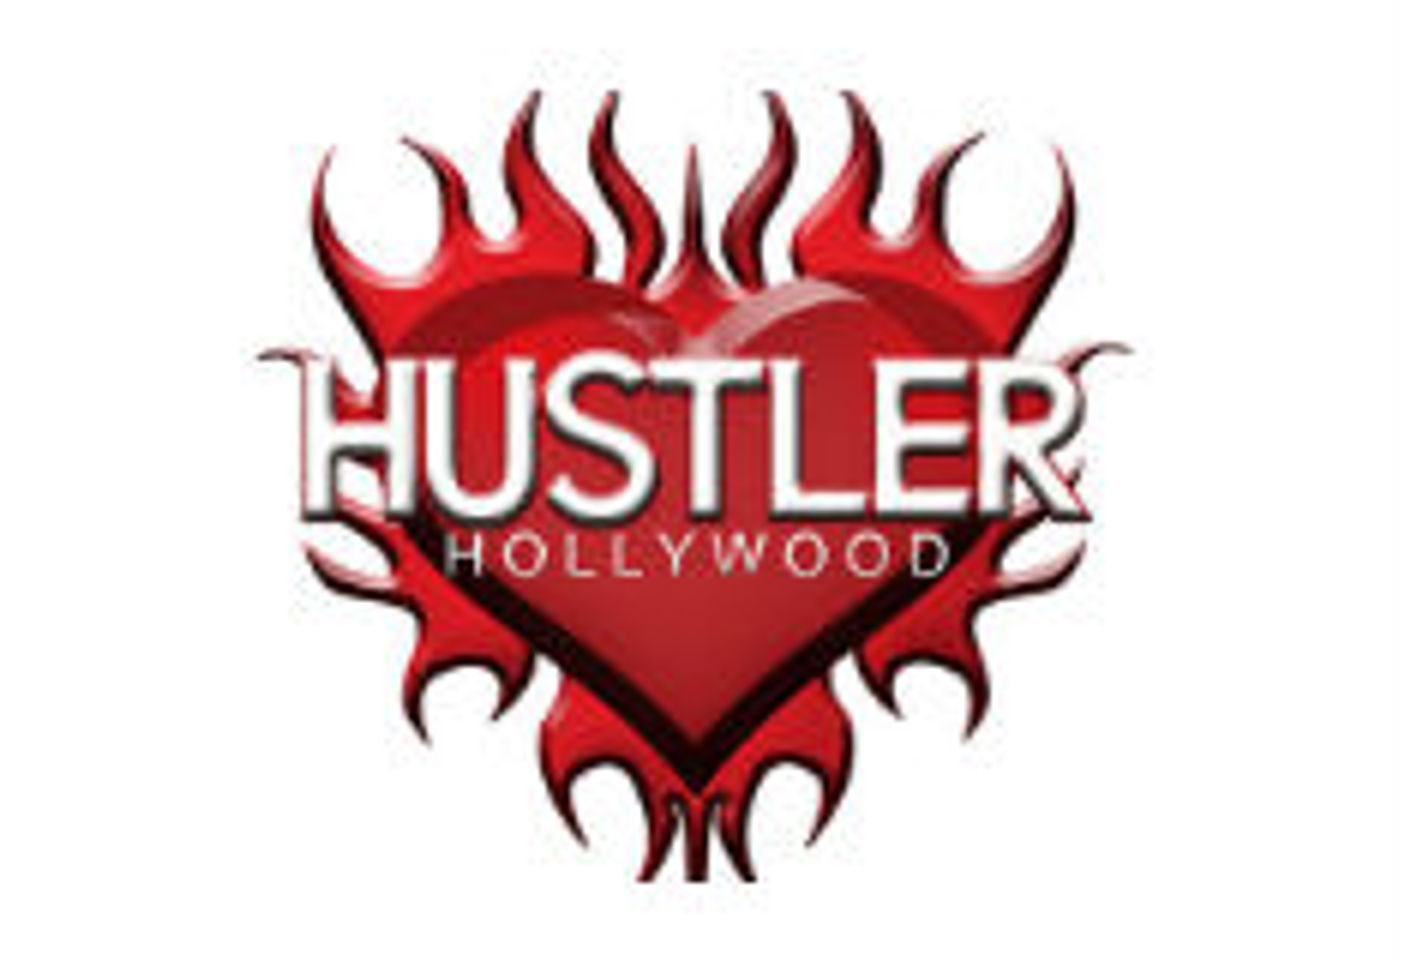 Hustler Hollywood Revamps Online Shopping Site